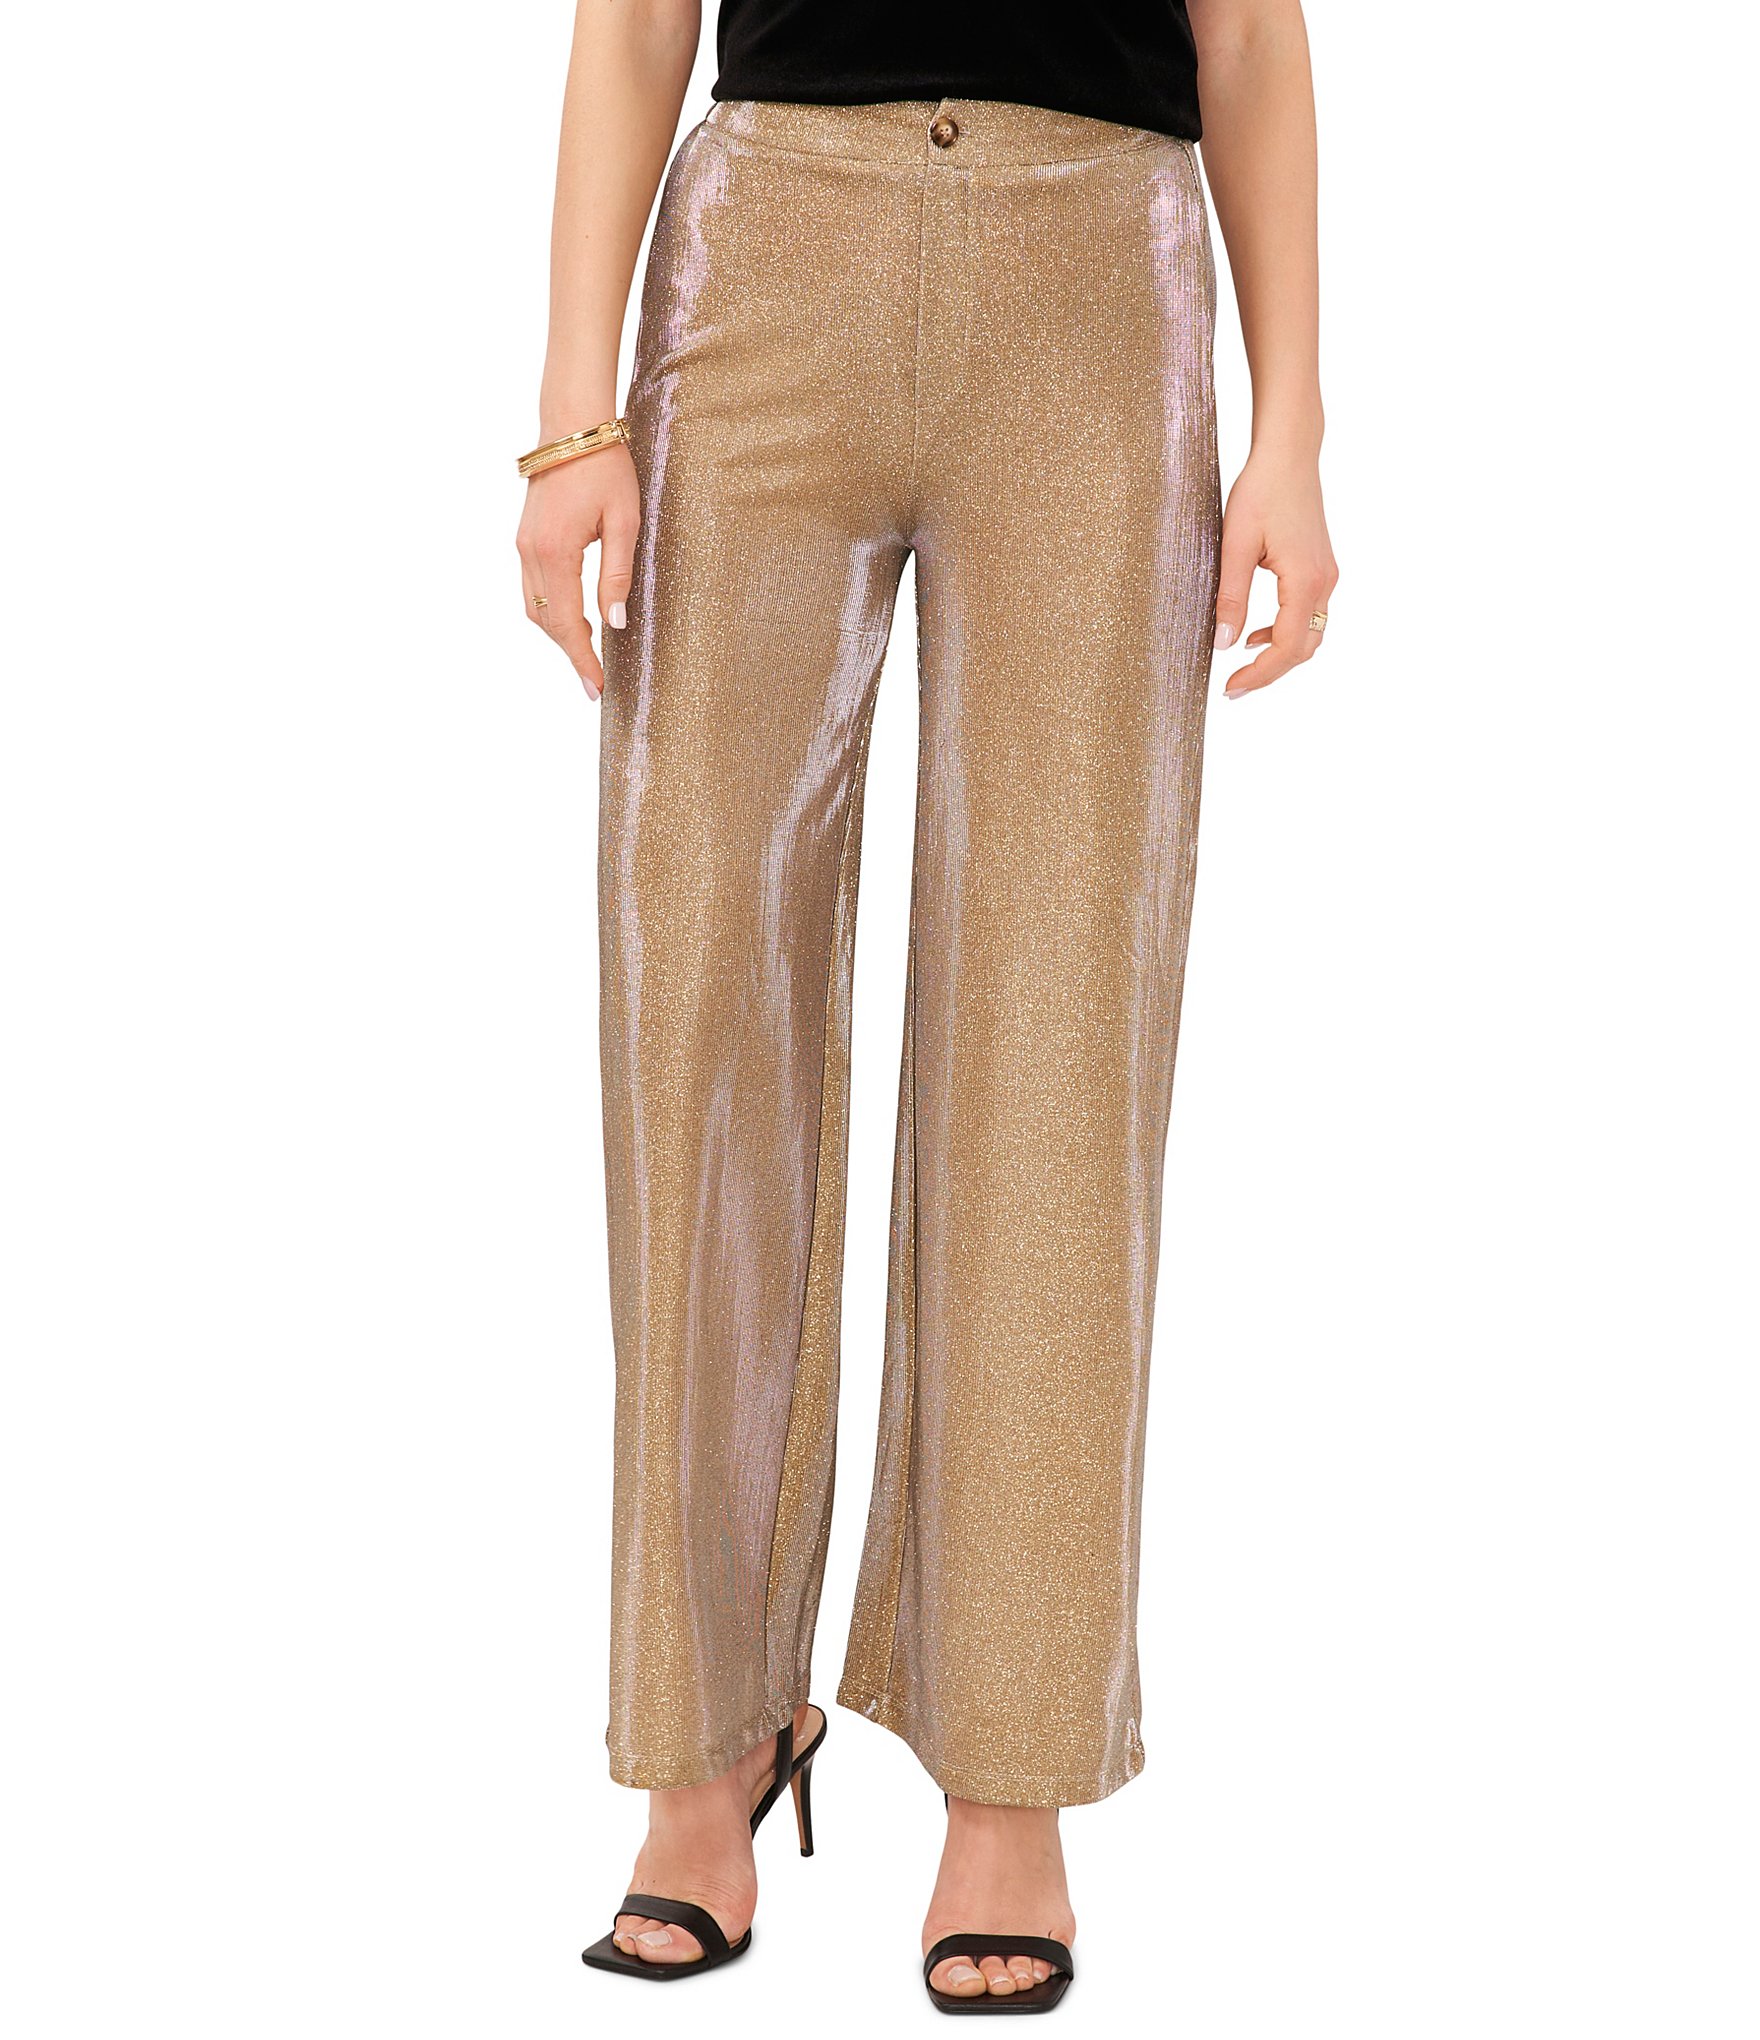 Αγορά AliExpress | 2023 Black Gold Glitter High Waist Wide Leg Sequin Pants  for Women Bling Full Length Sparkling Flared Trousers Party Club Wear